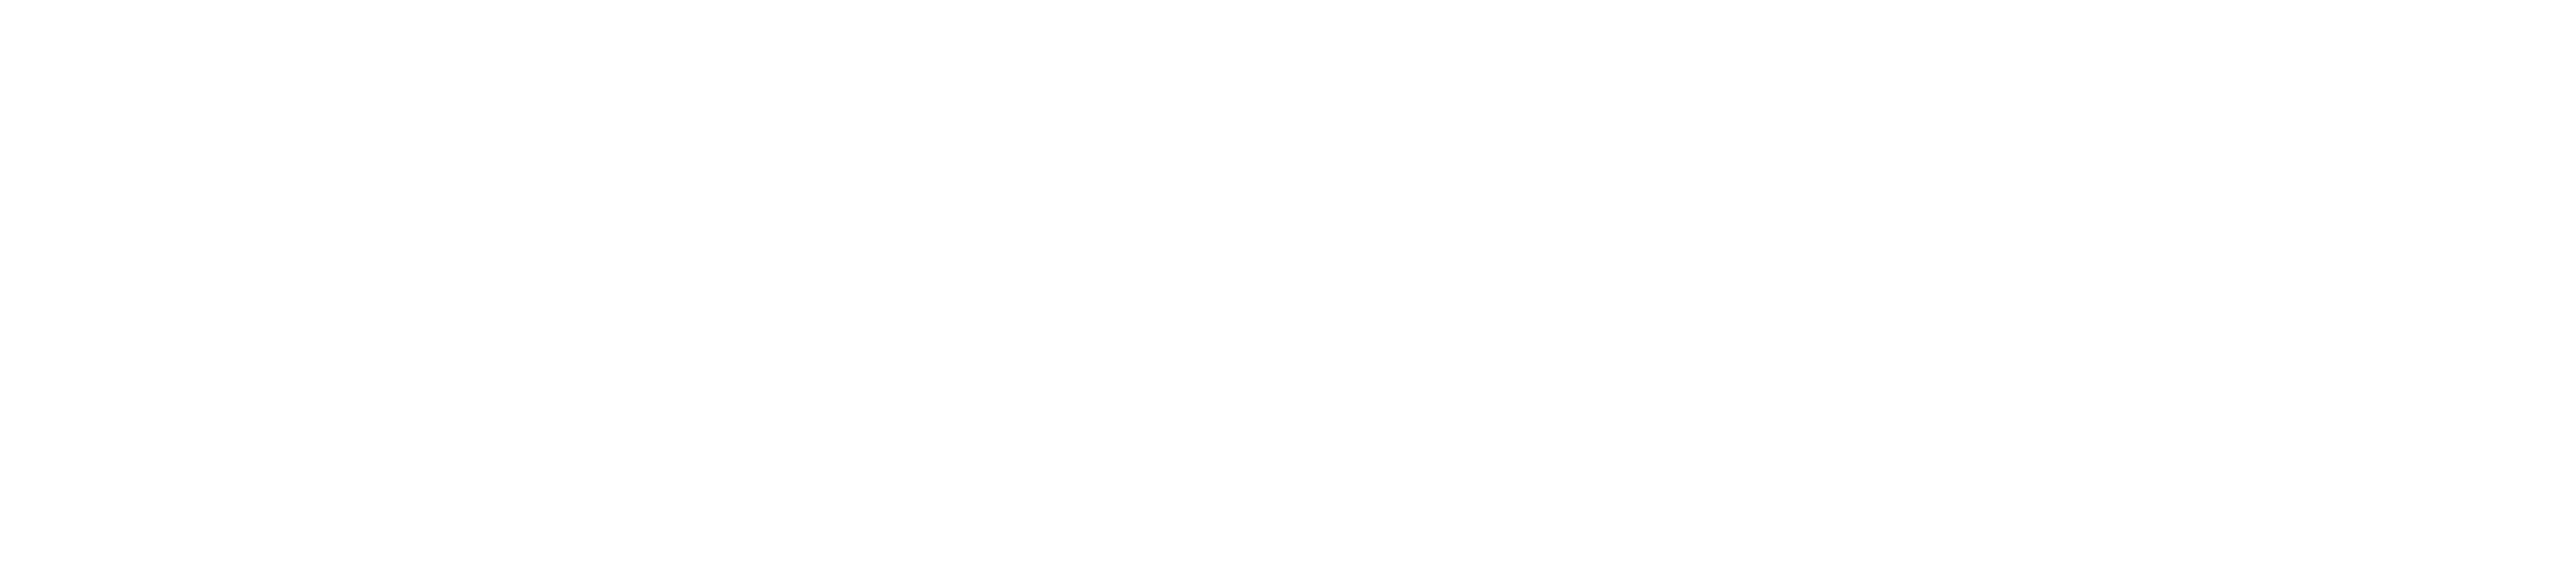 Hot Flash Diet